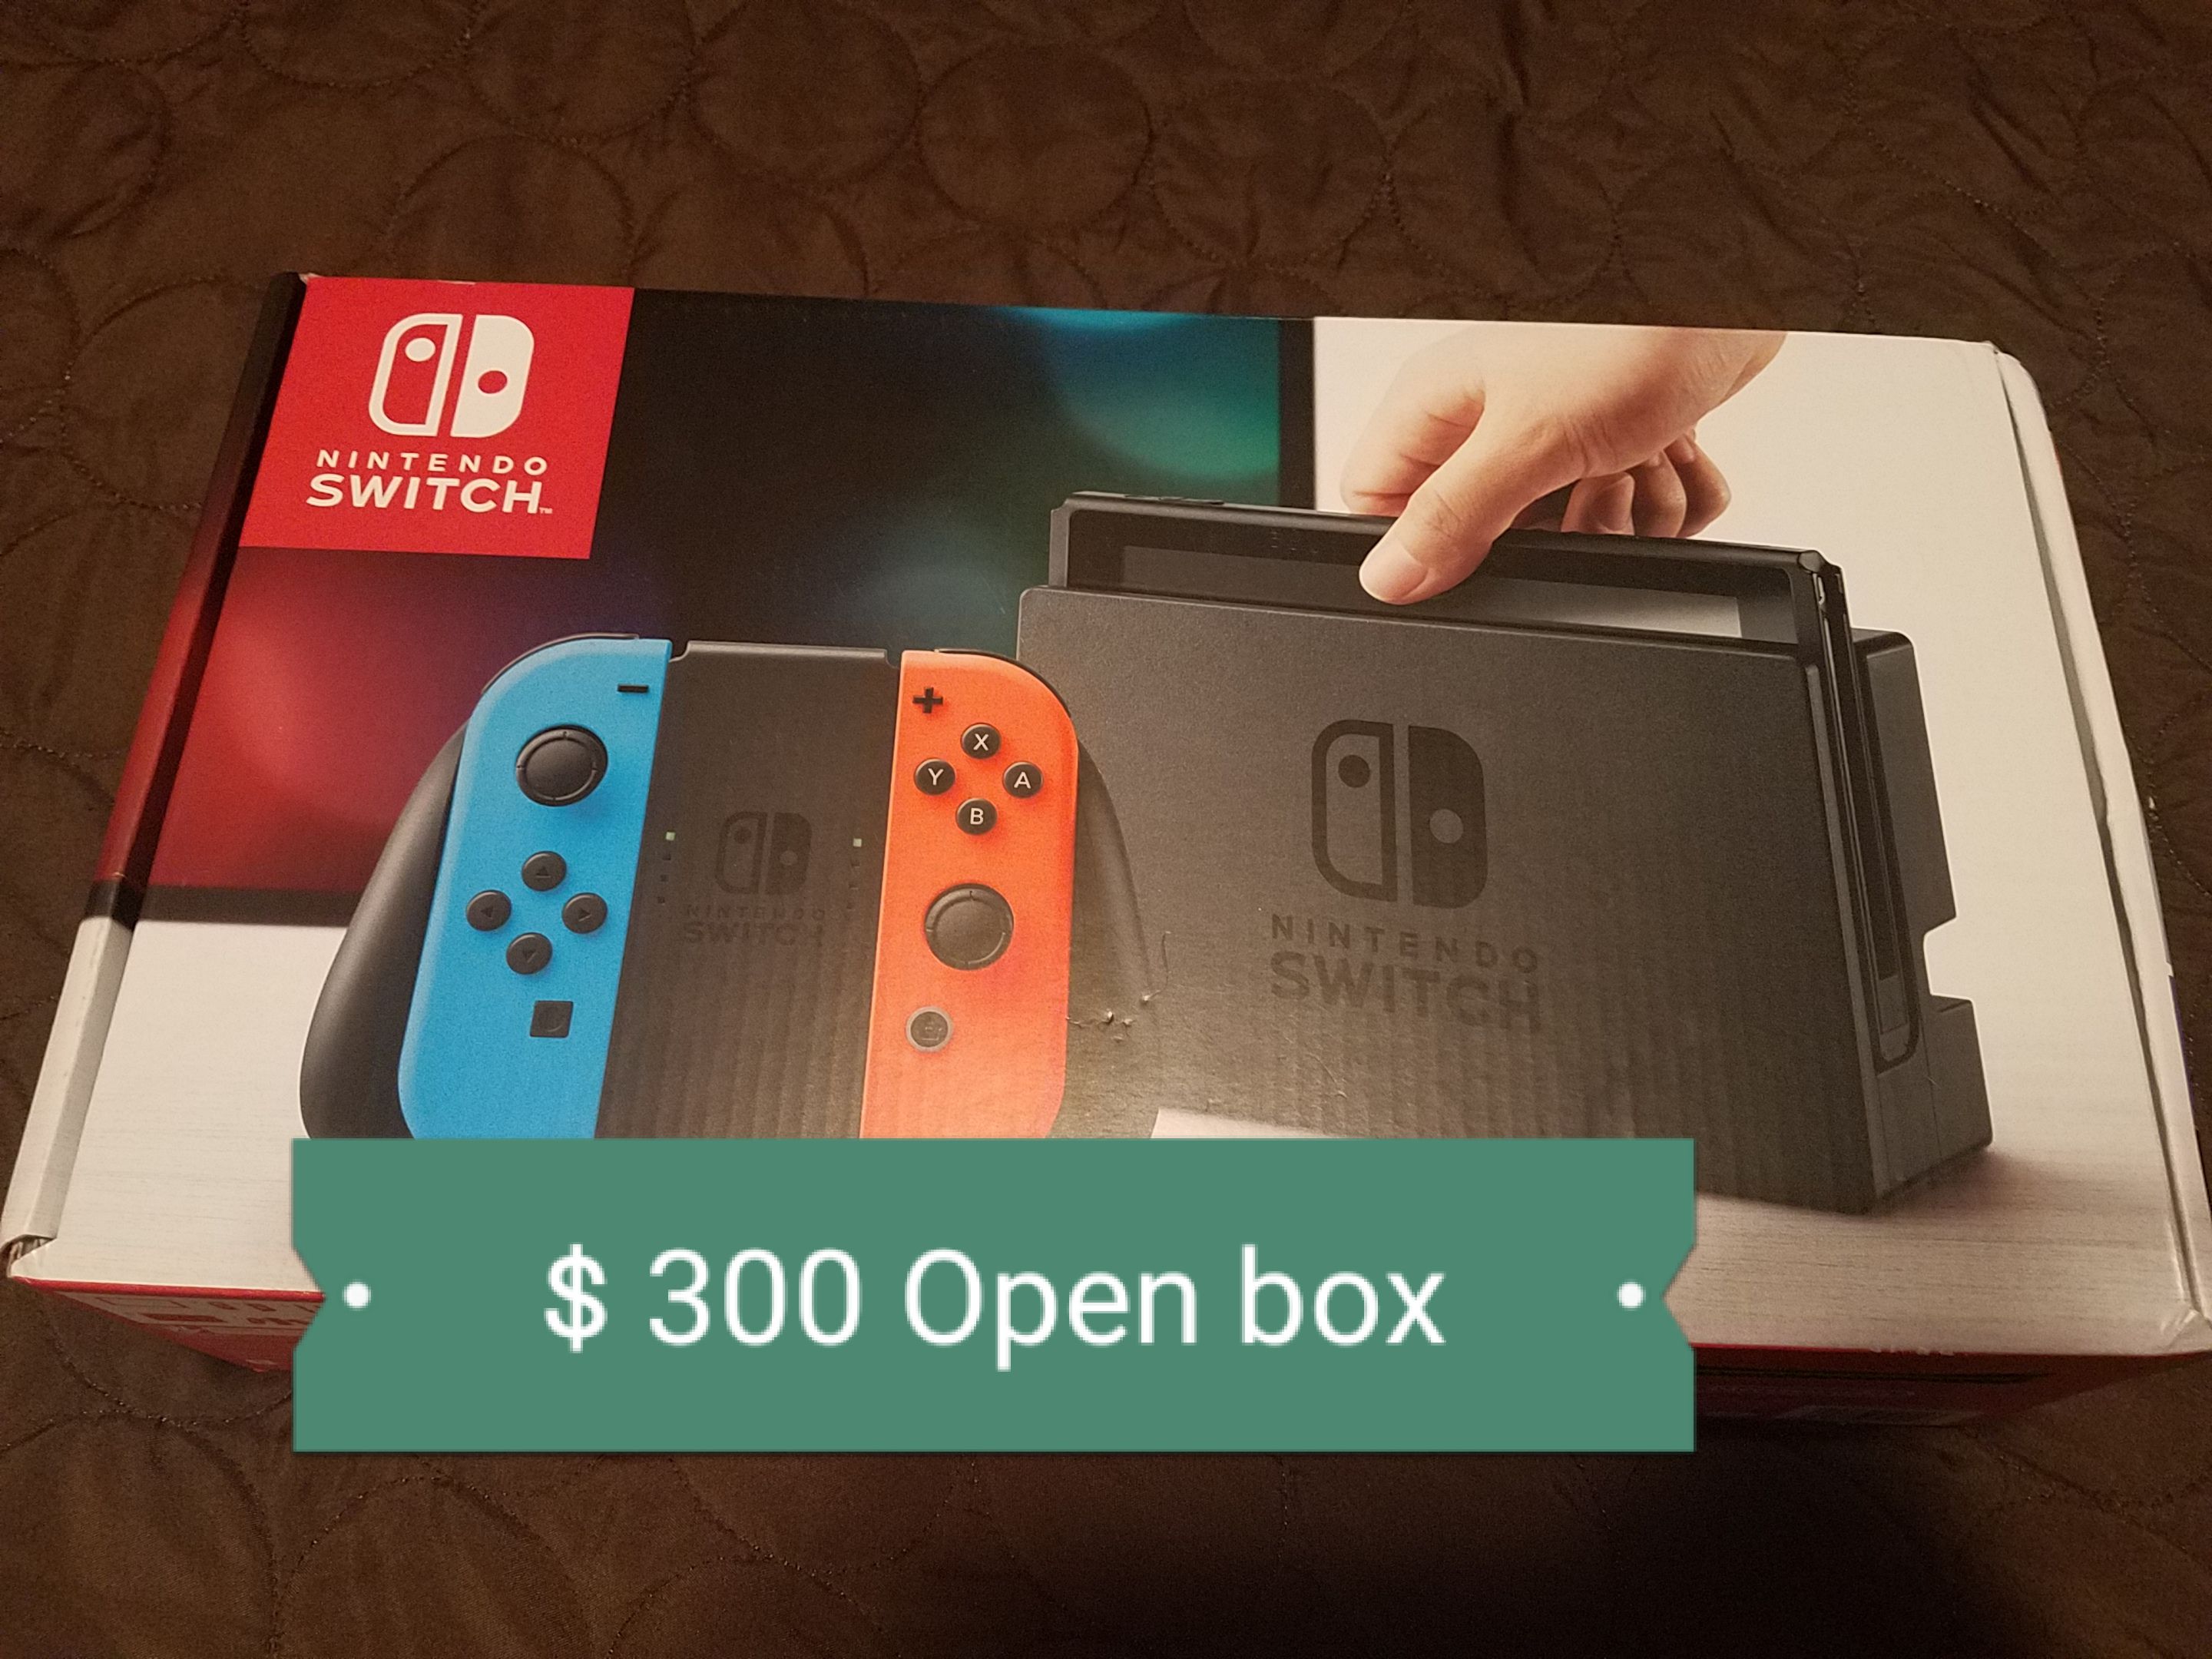 Open box Nintendo Switch like new